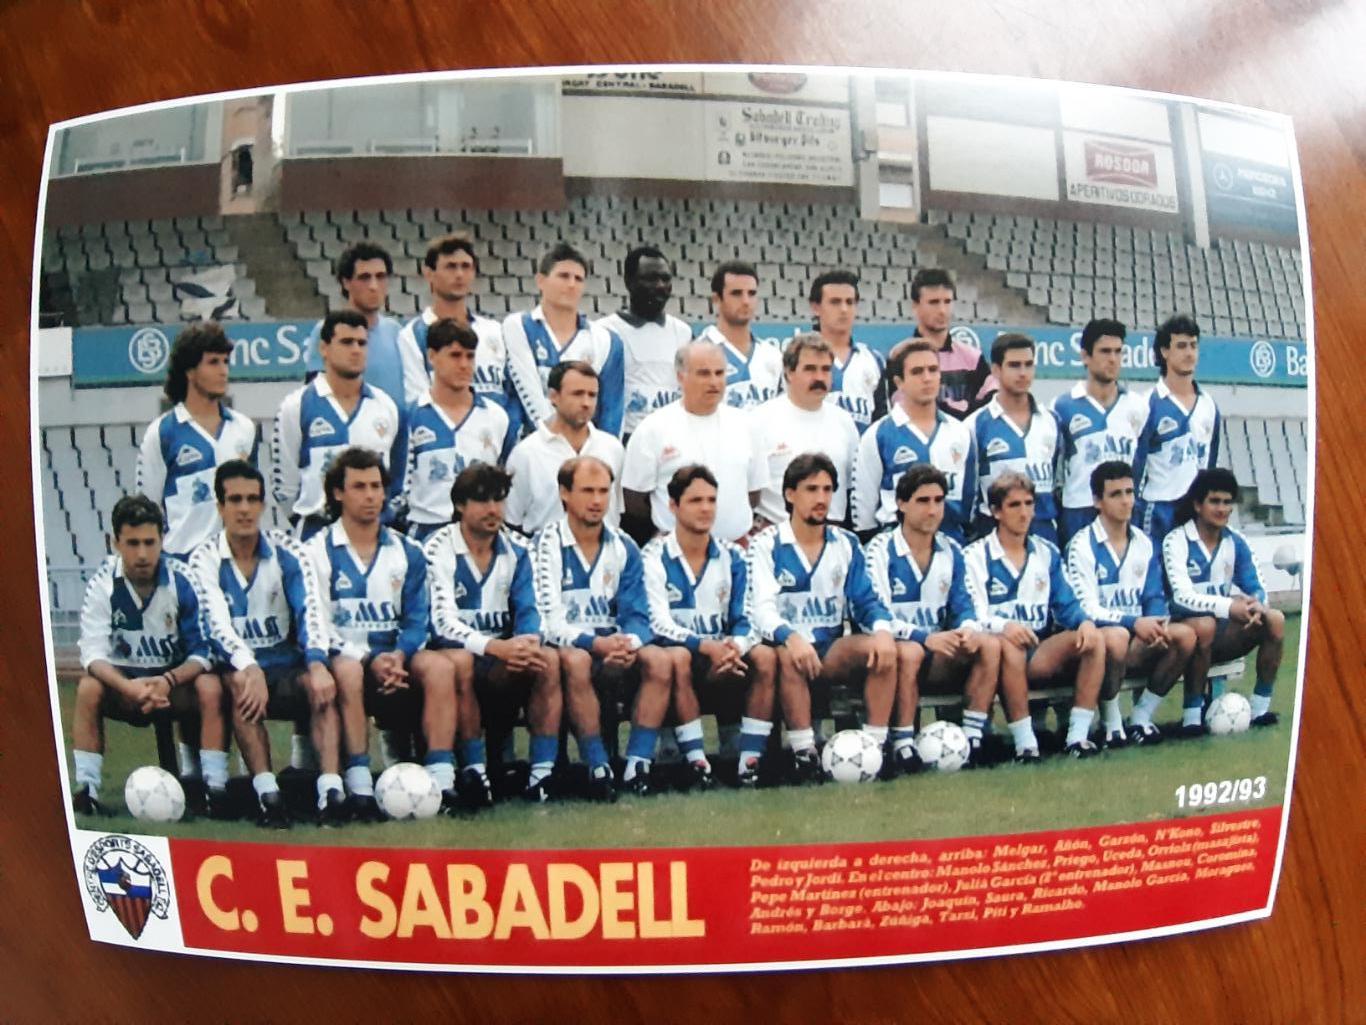 C.E. SABADELL 1992/93 (SPAIN)